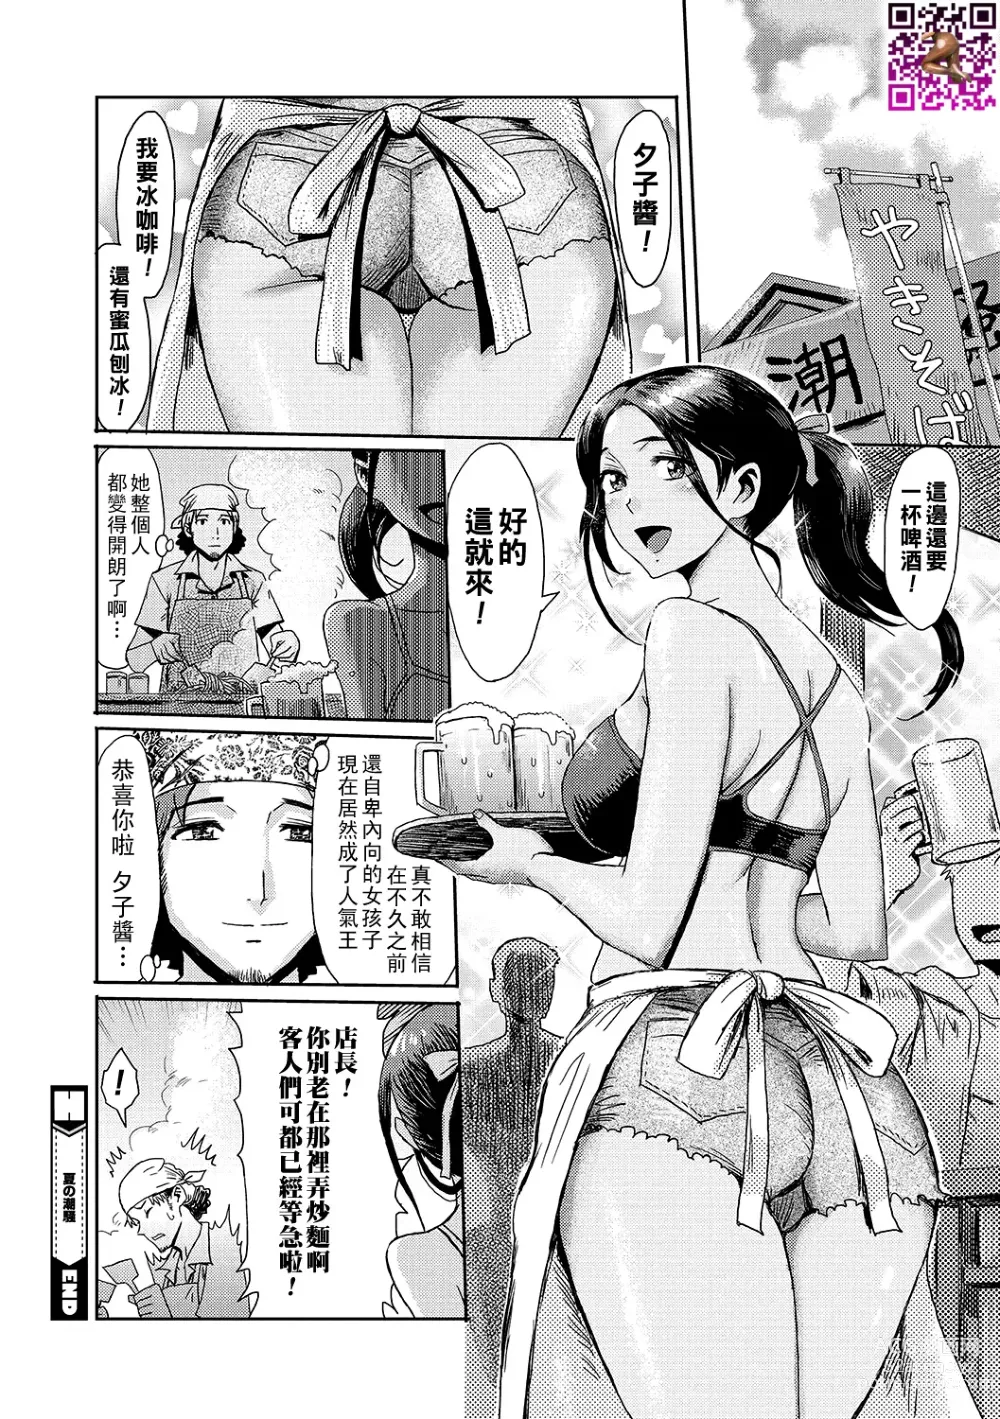 Page 24 of manga Natsu no Shiosai